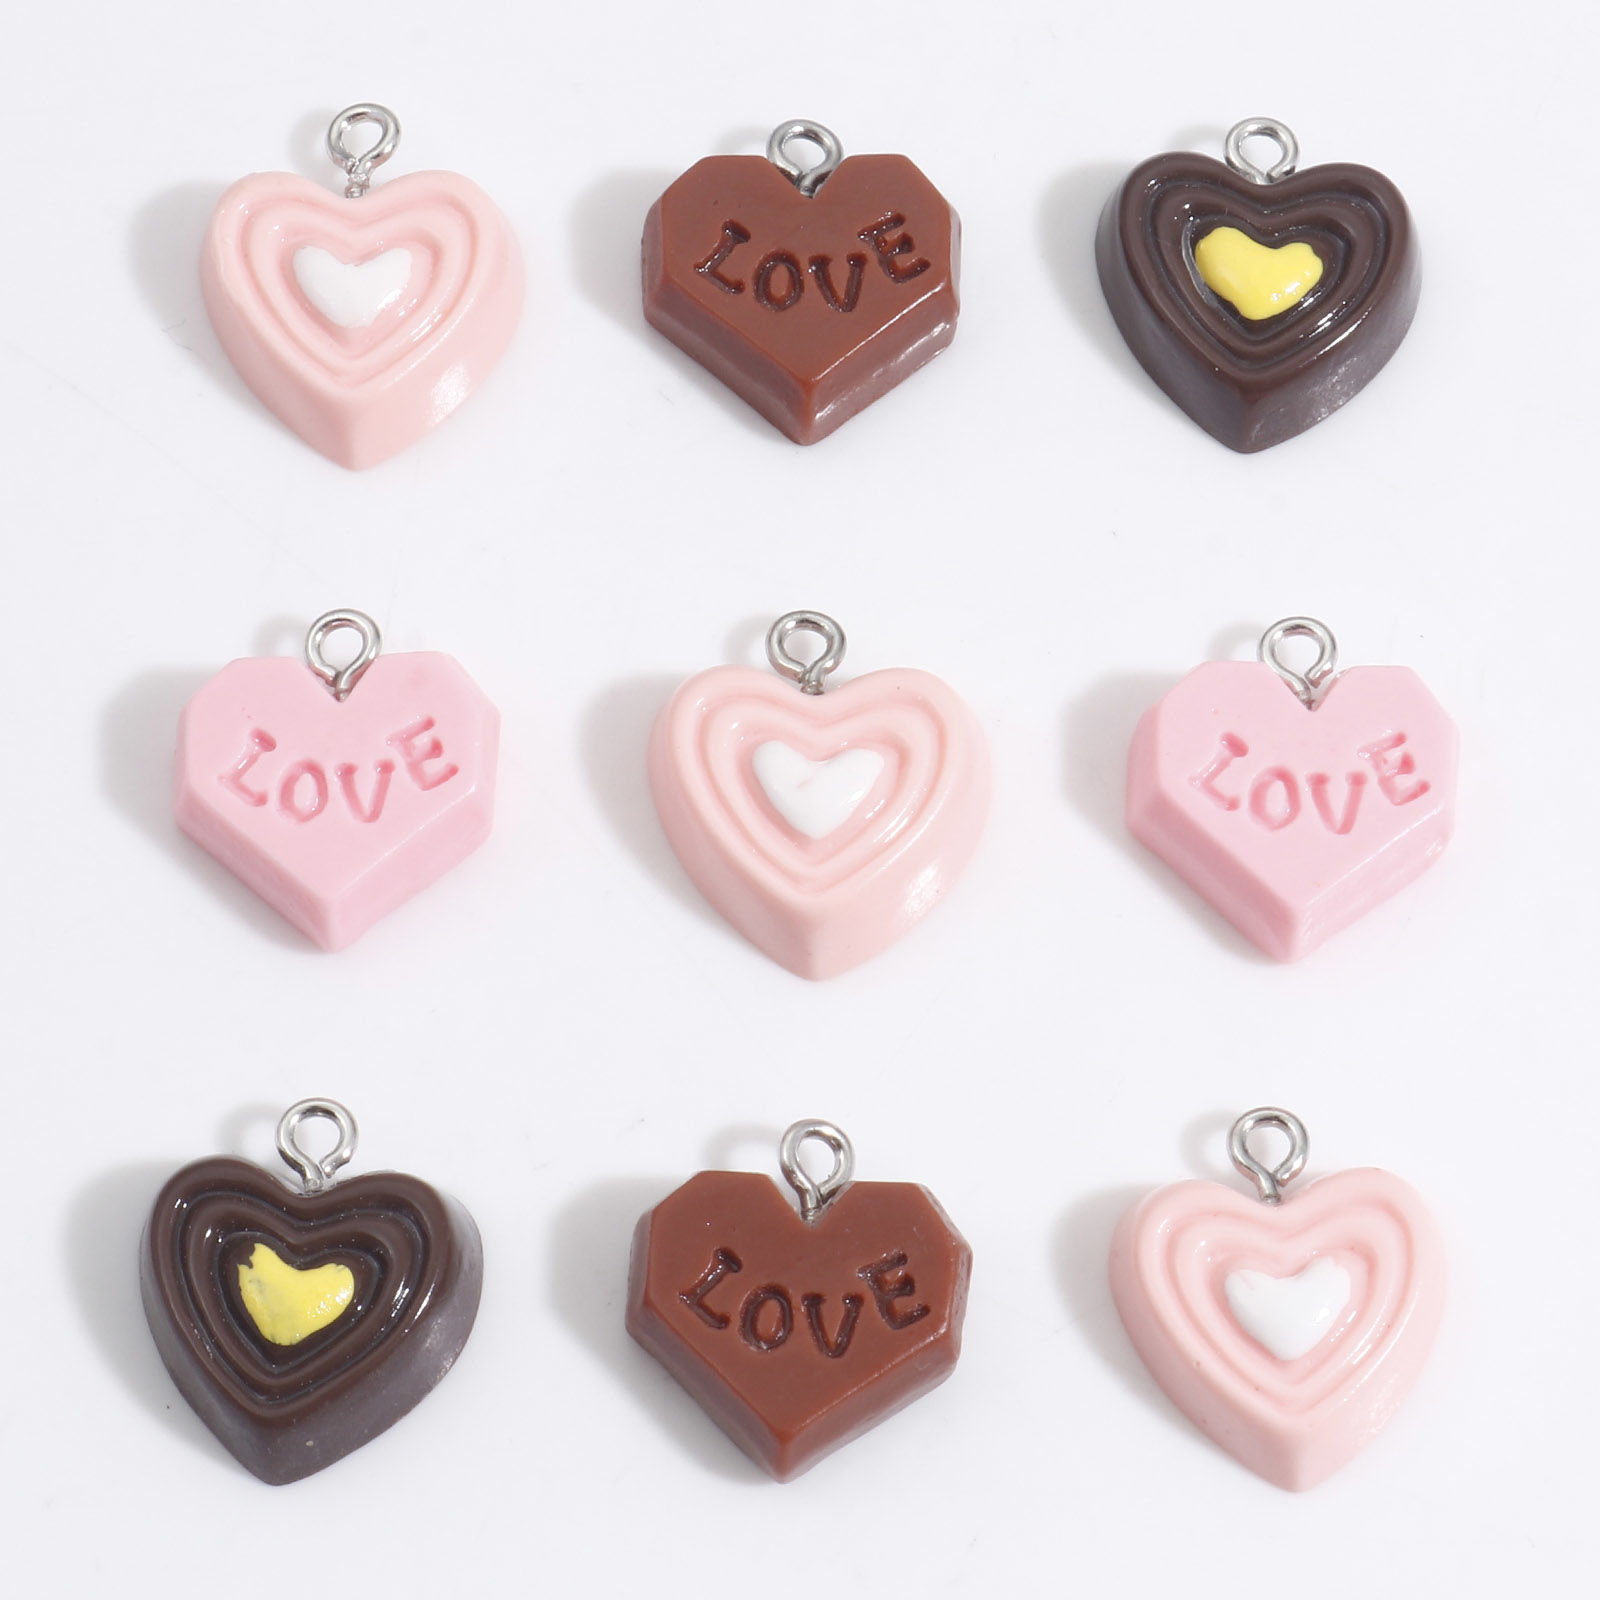 Bild von Harz Valentinstag Charms Schokolade Herz Silberfarbe Bunt 18mm x 16mm, 10 Stück